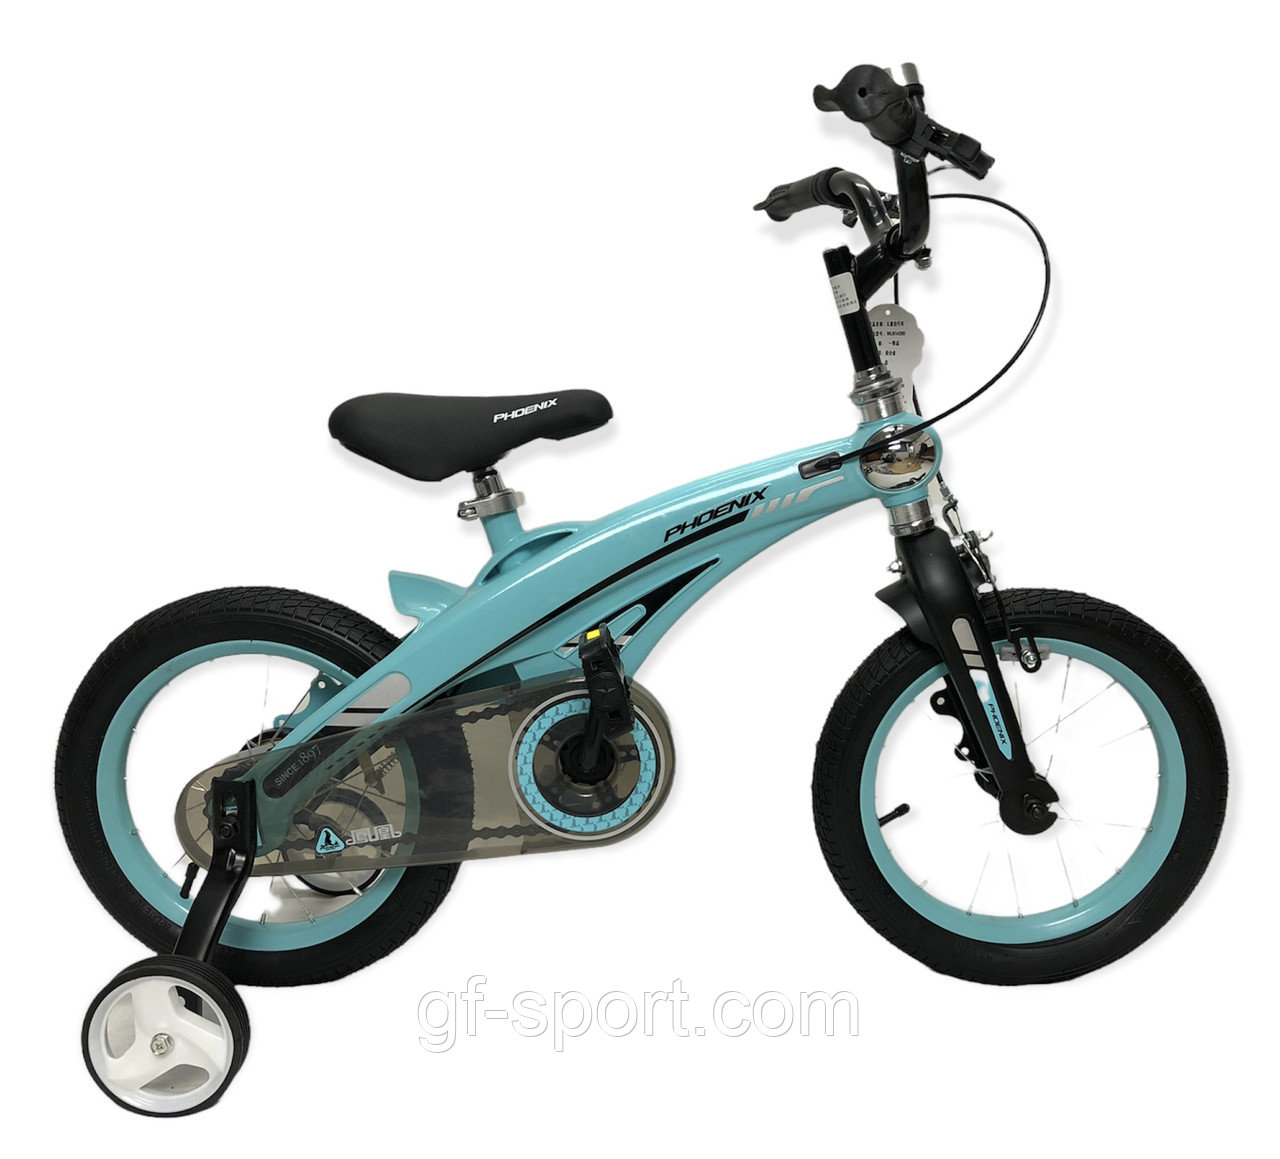 Велосипед Phoenix голубой алюминиевый сплав оригинал детский с холостым ходом 14 размер (528-14)